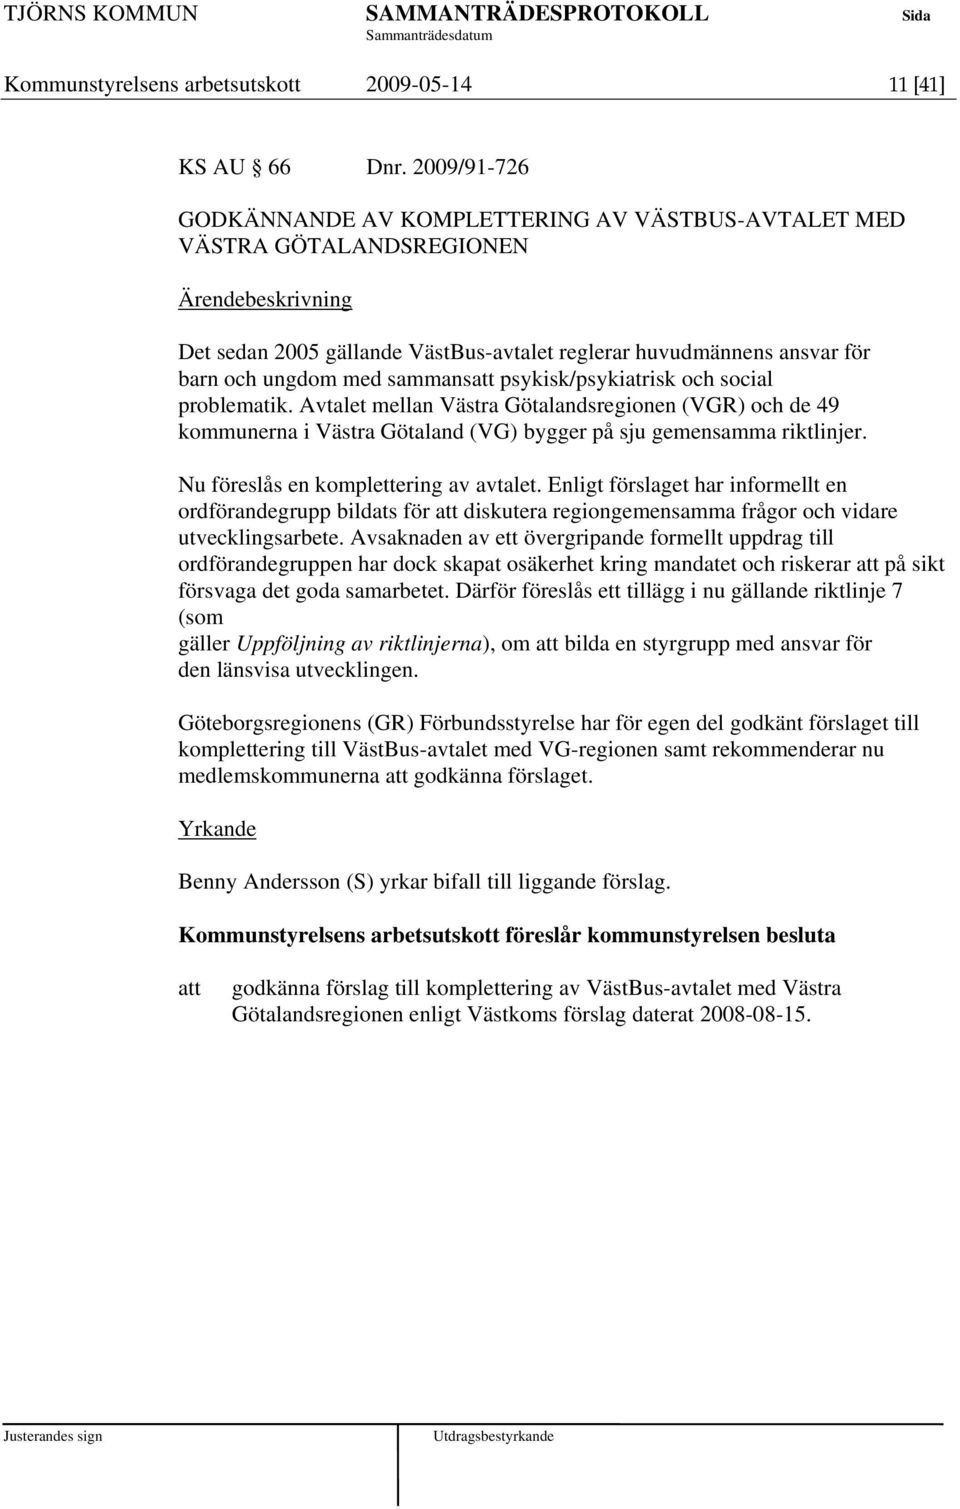 psykisk/psykiatrisk och social problematik. Avtalet mellan Västra Götalandsregionen (VGR) och de 49 kommunerna i Västra Götaland (VG) bygger på sju gemensamma riktlinjer.